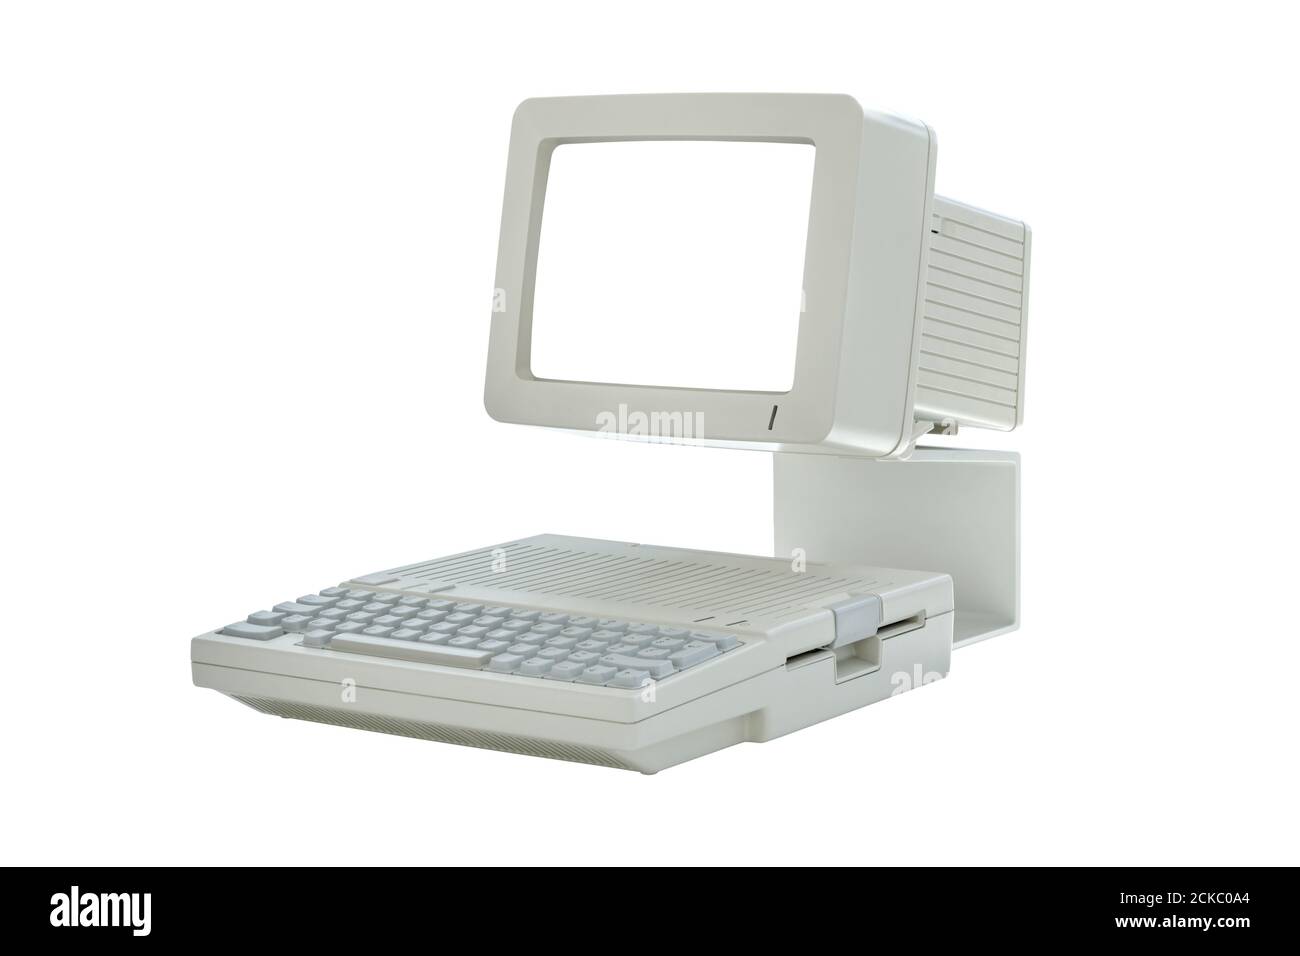 Alte vintage Desktop-Computer aus den achtziger Jahren mit leerem Bildschirm isoliert auf weißem Hintergrund. Seitenansicht des klassischen Retro-PCs Stockfoto